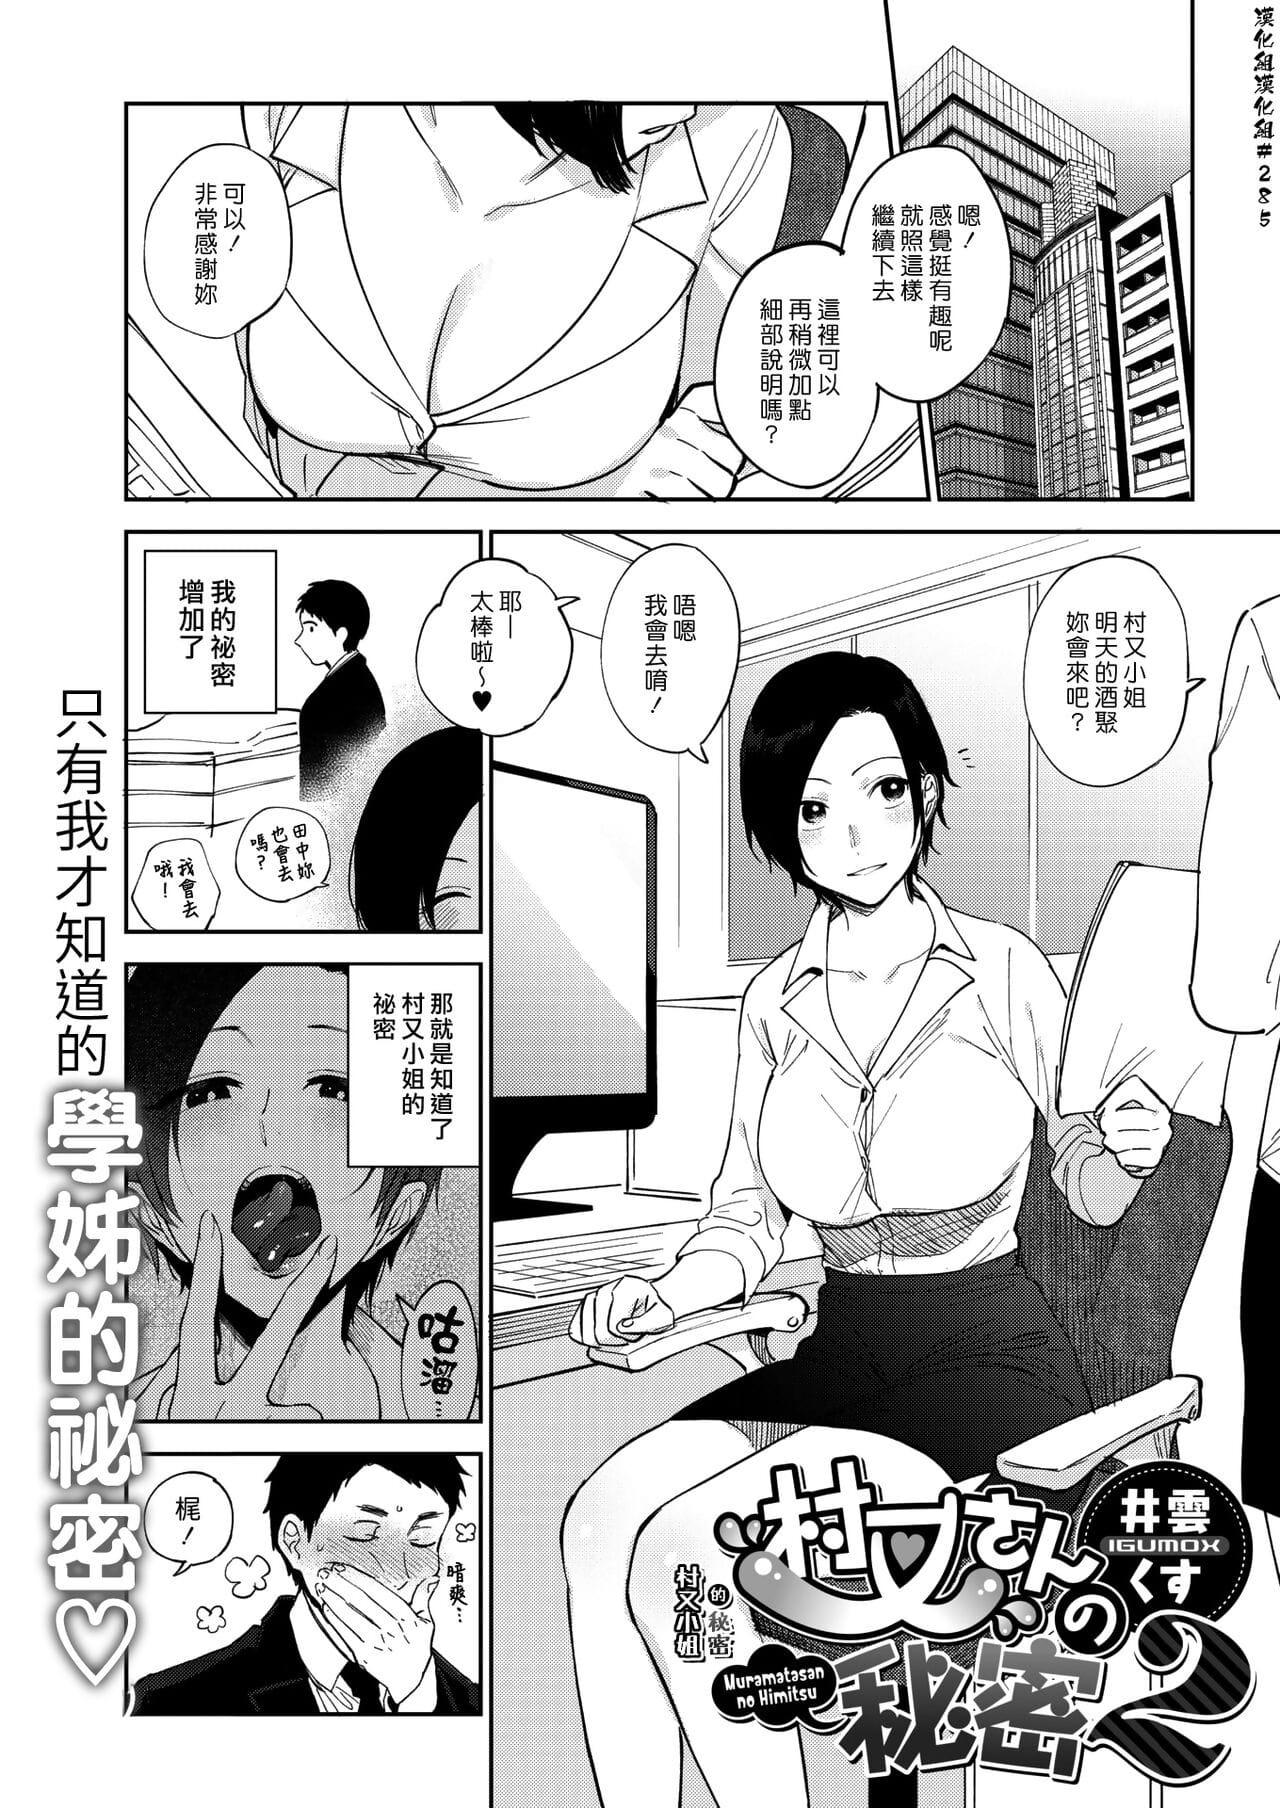 Muramata-san no Himitsu 2 - ??????? 2 page 1